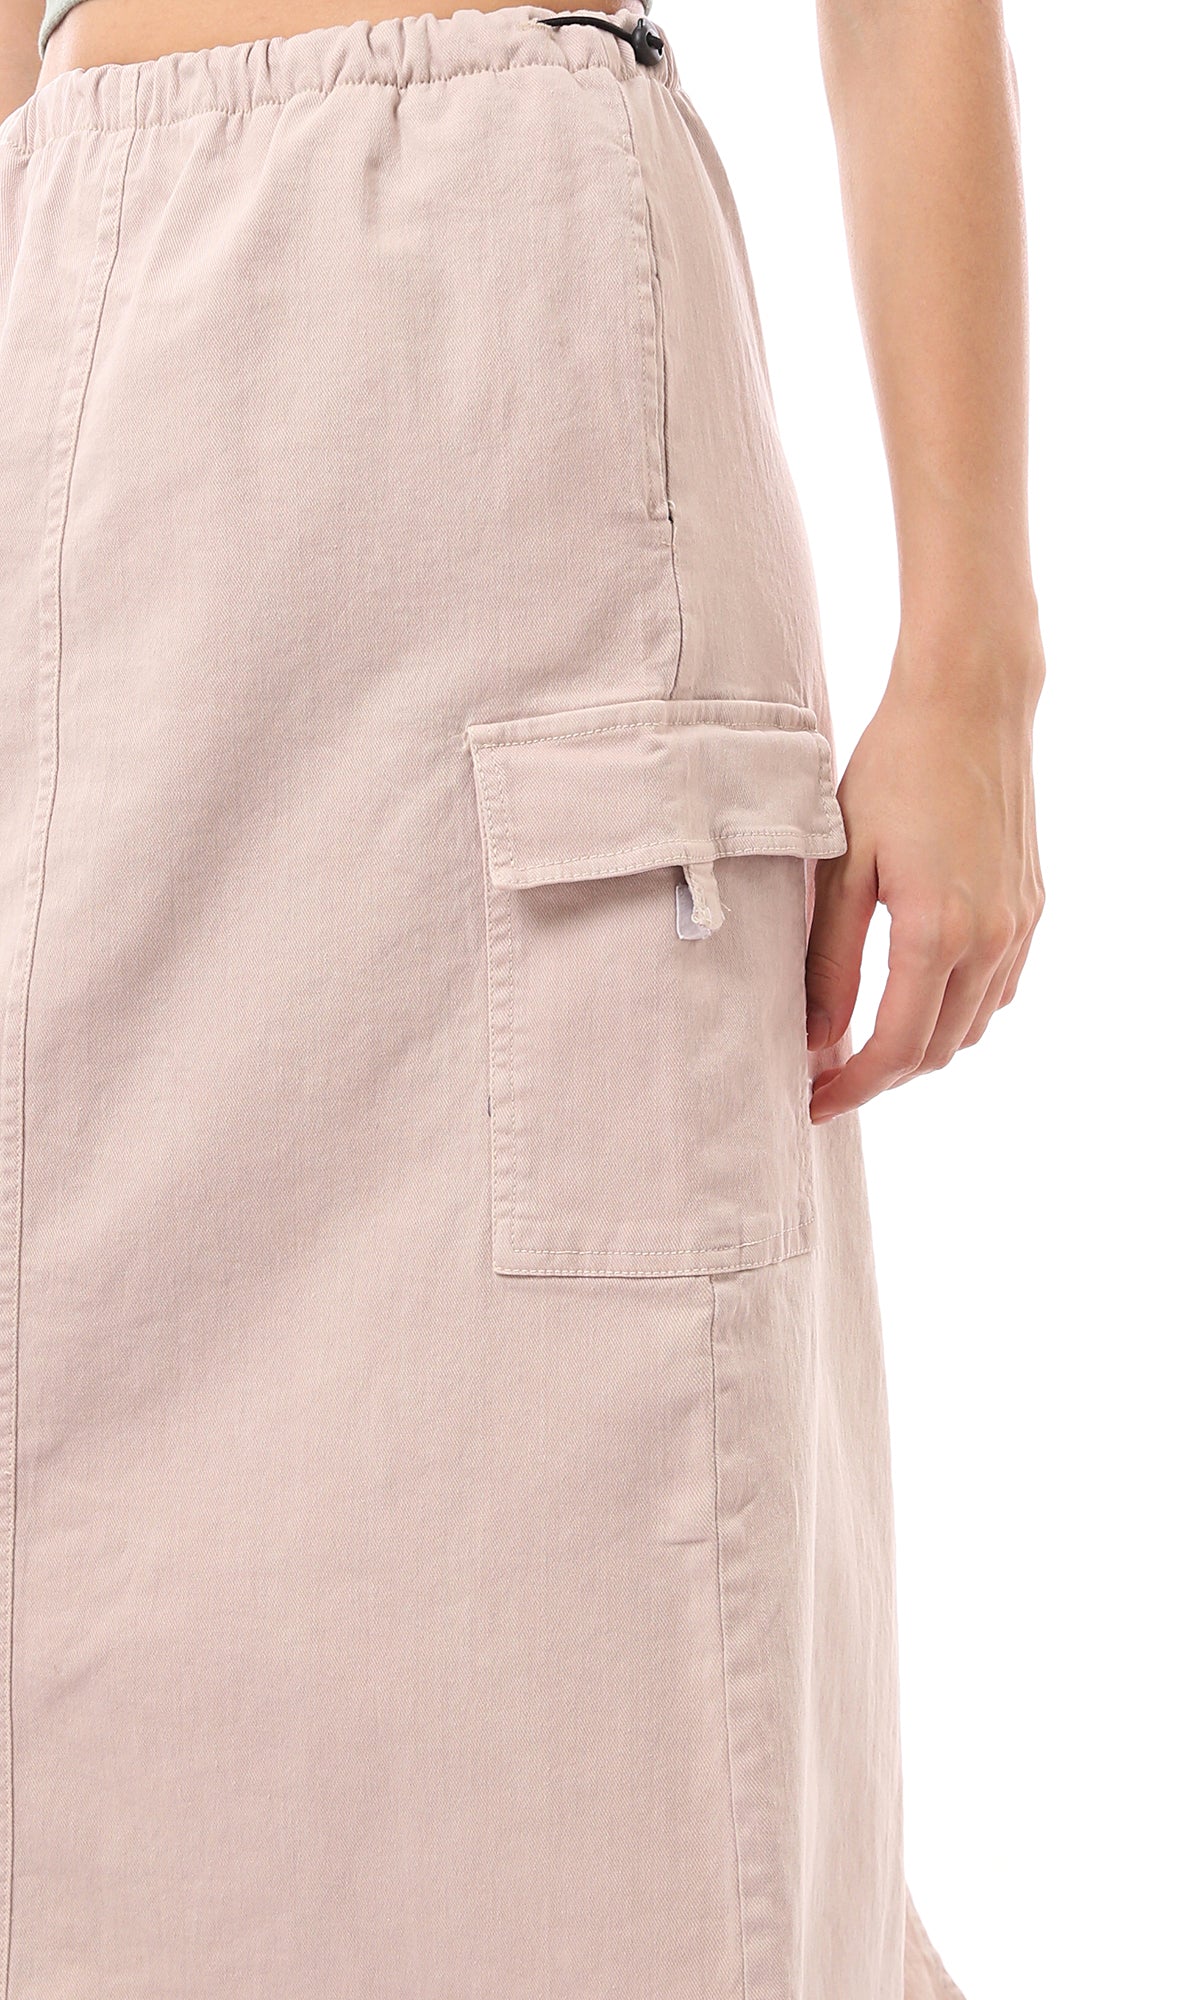 O168062 Adjustable Elastic Waist Beige Midi Skirt